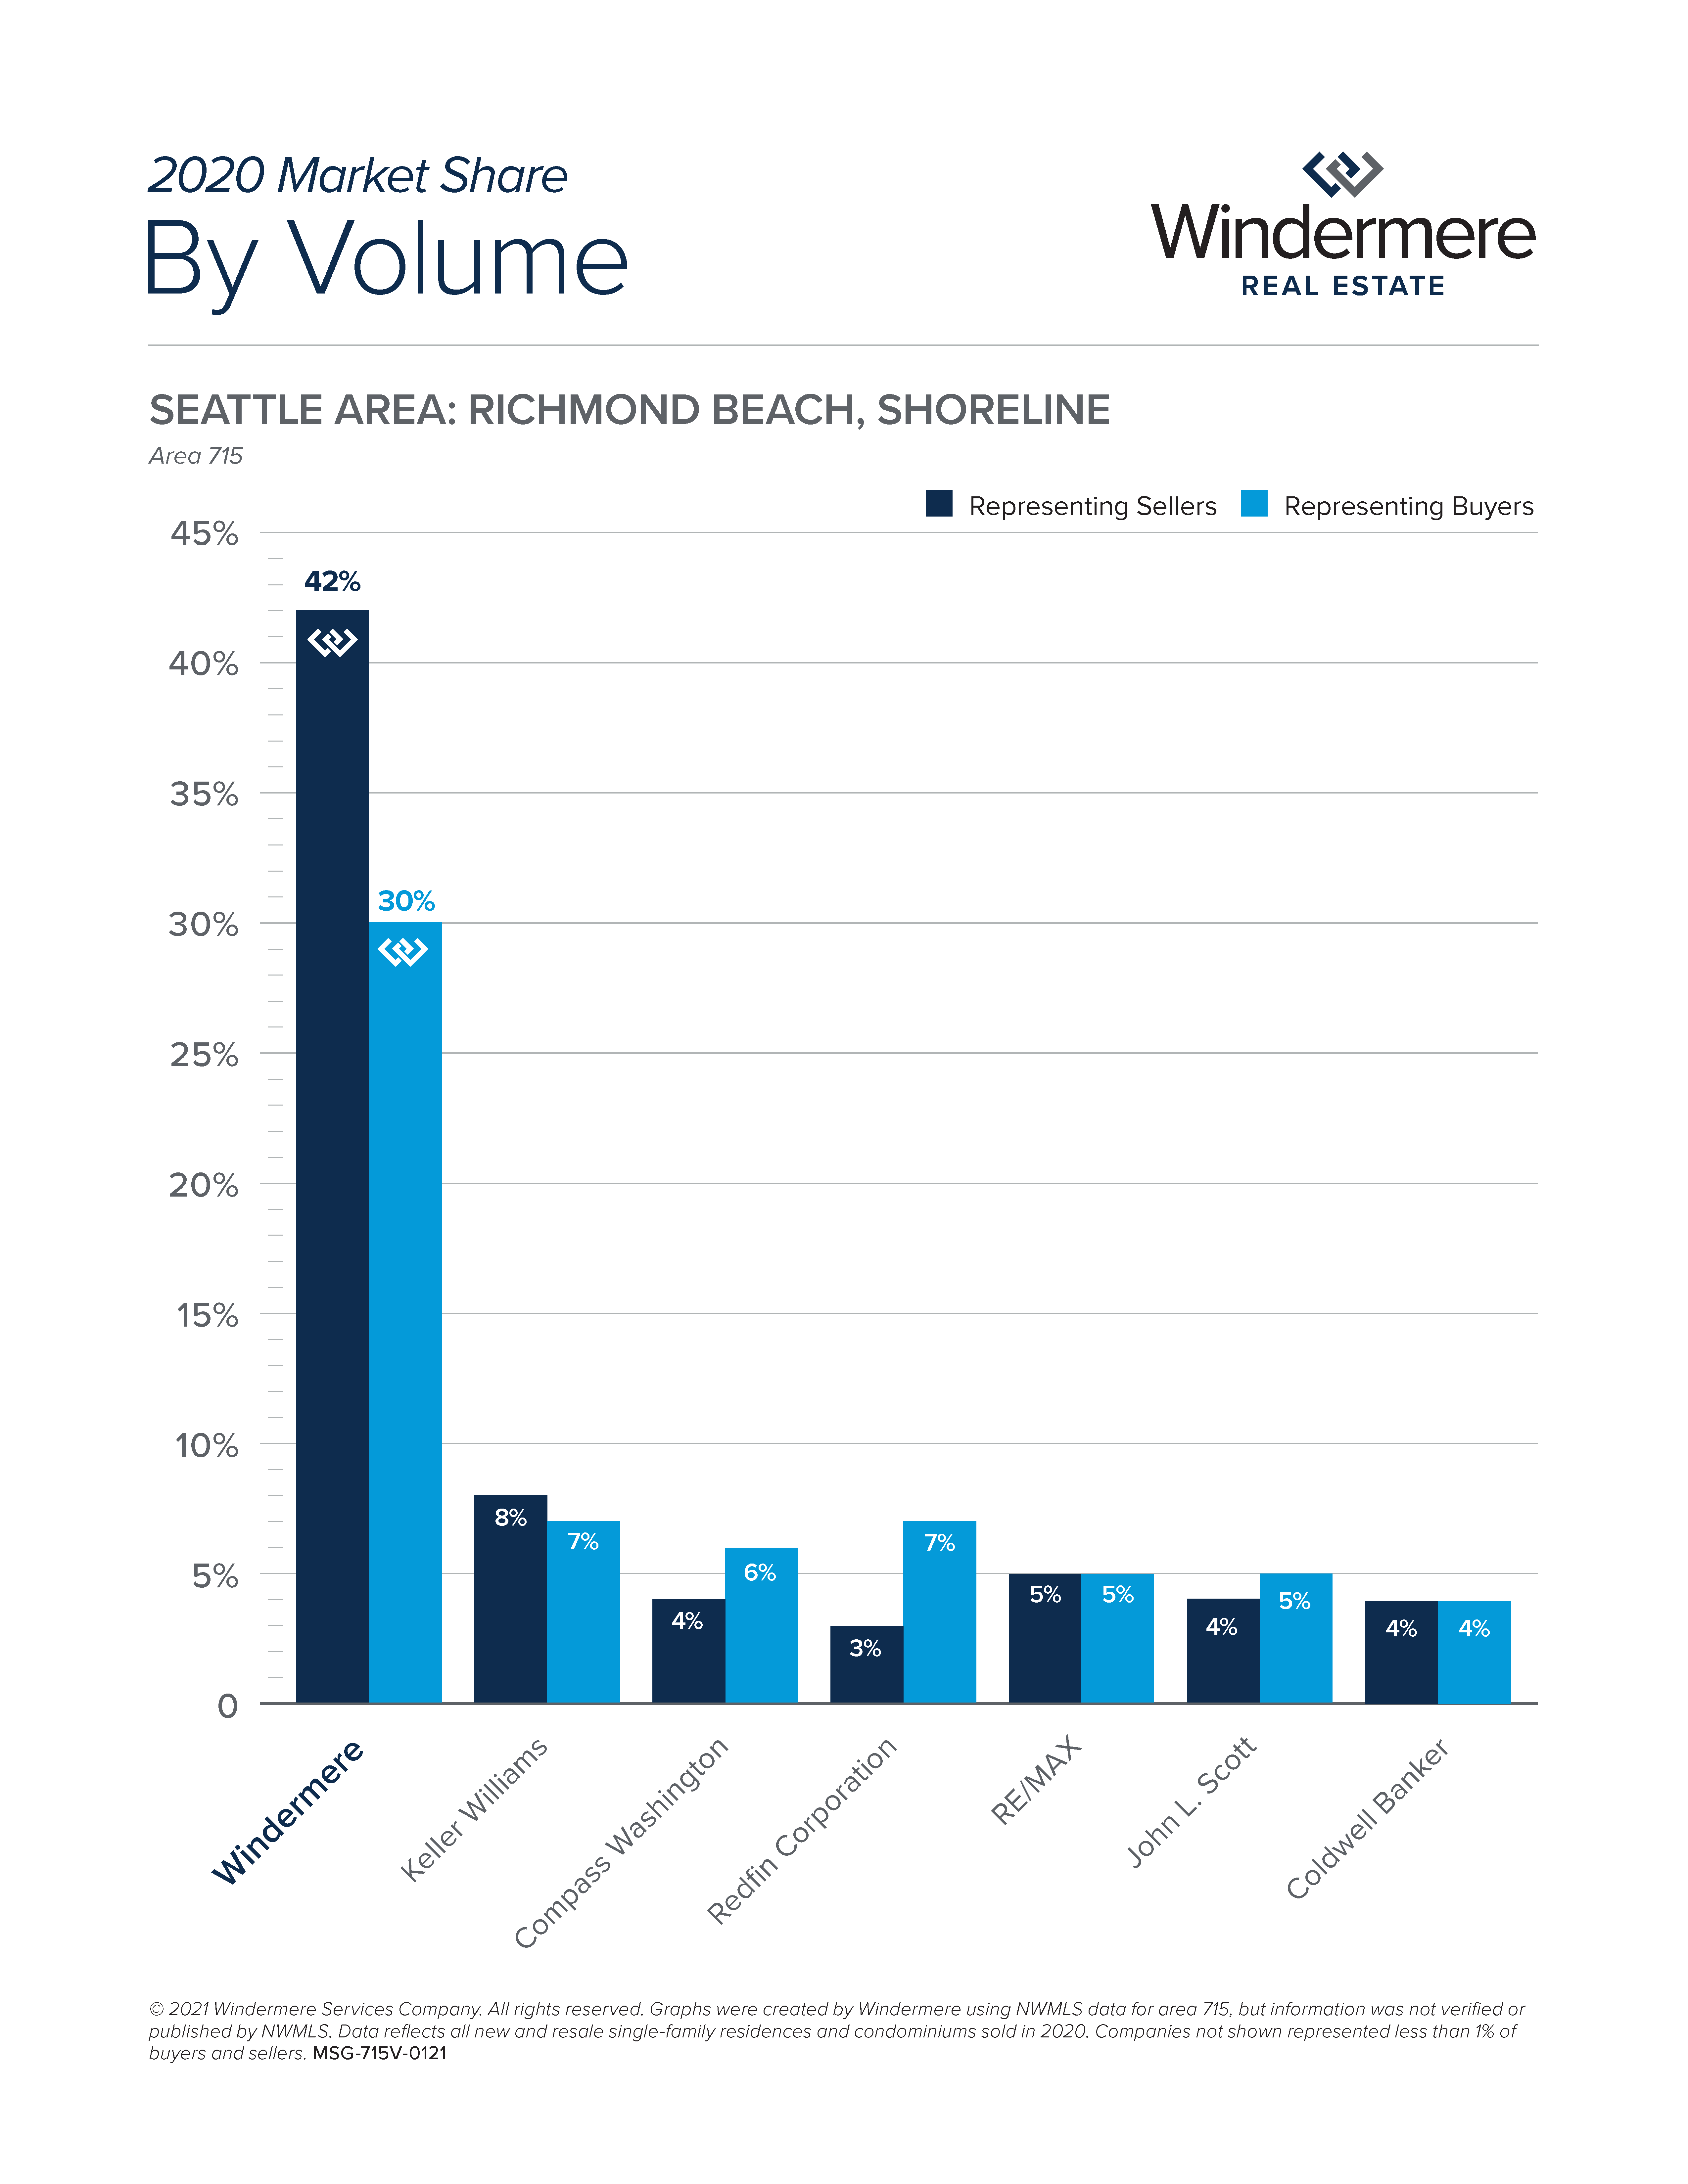 2020 Richmond Beach Shorline by Volume